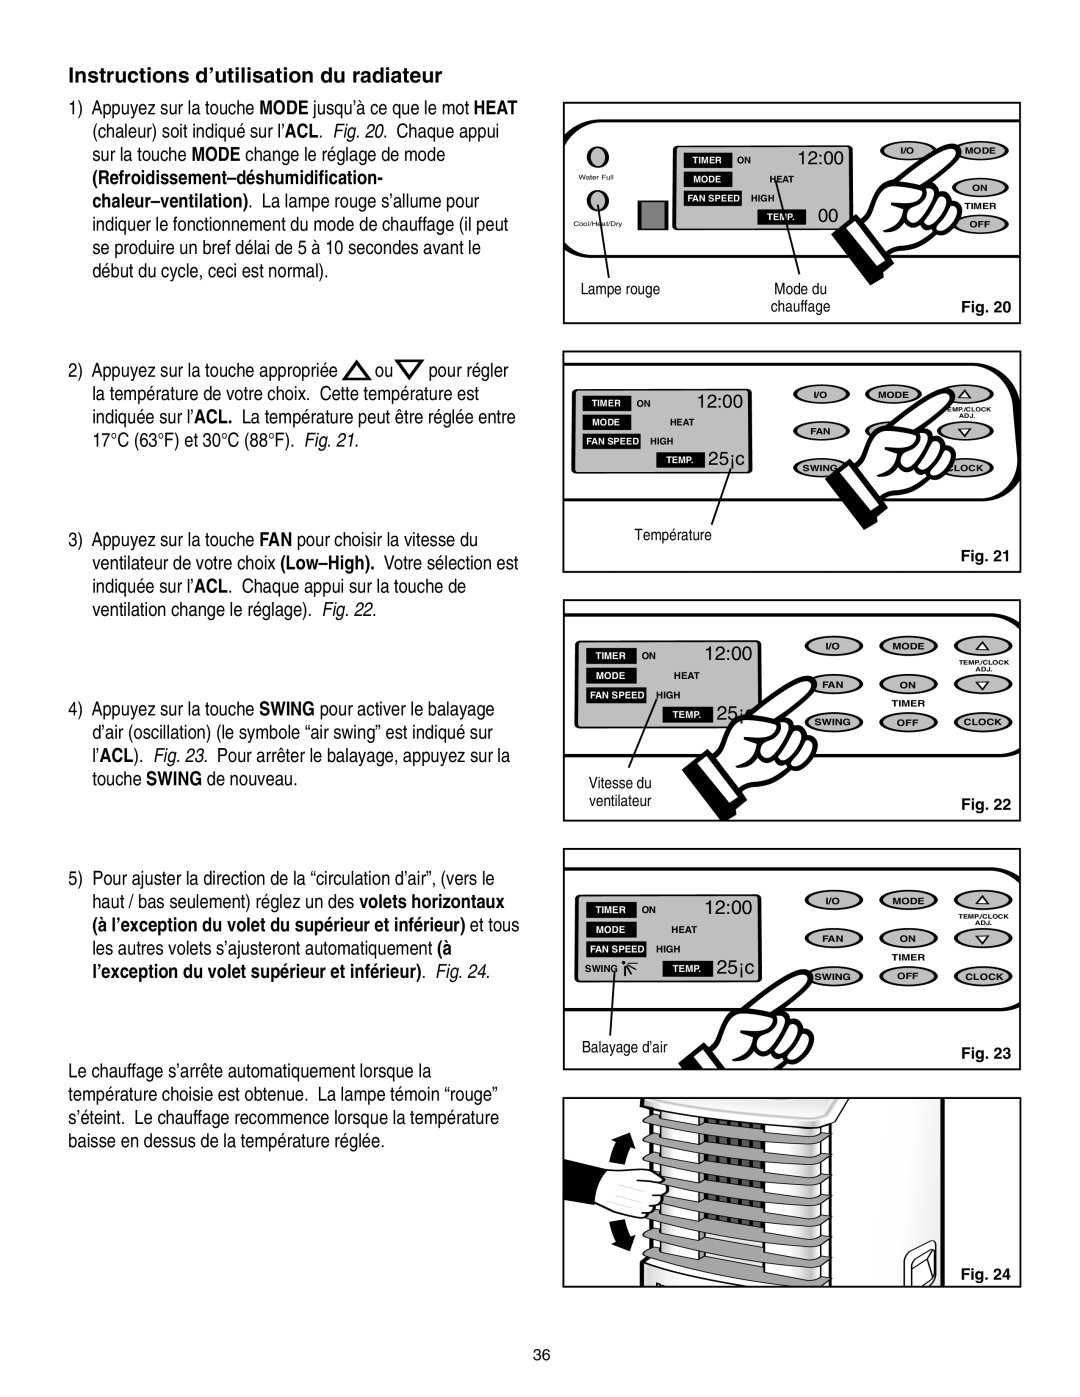 Danby SPAC8499 manual Instructions d’utilisation du radiateur, 12:00, 25¡c 